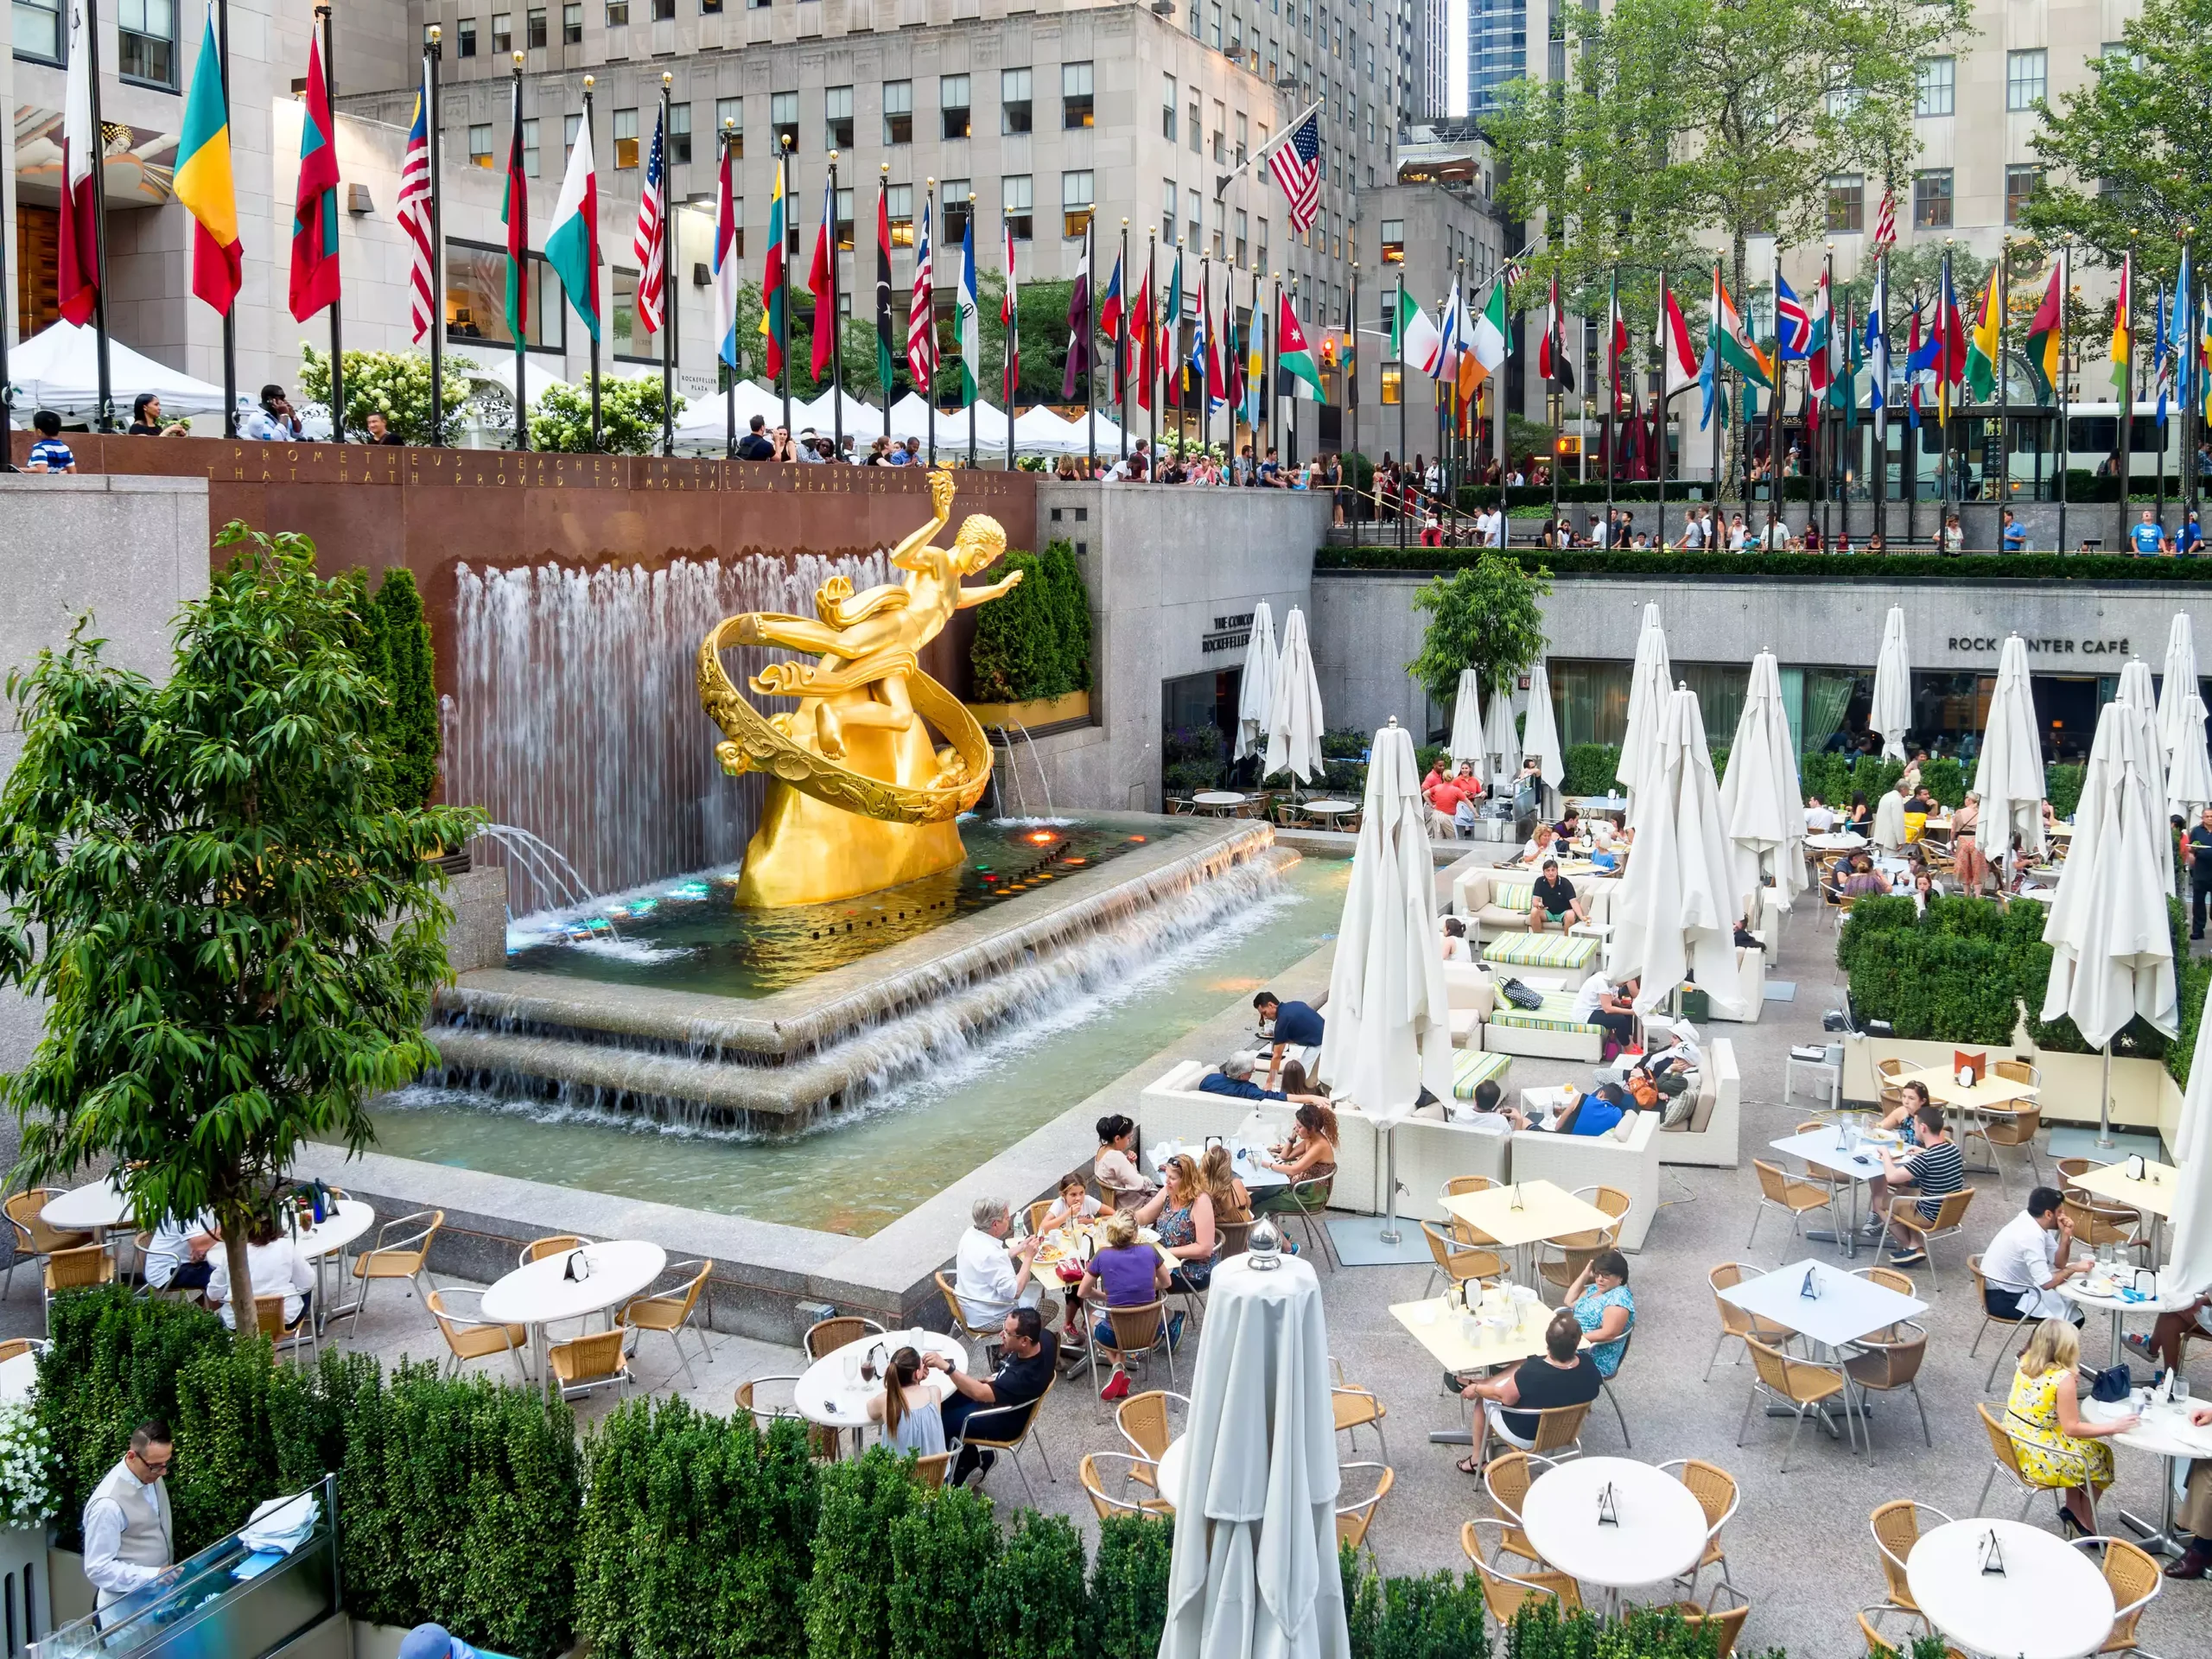 Wanderlust America: Exploring the Rockefeller Center